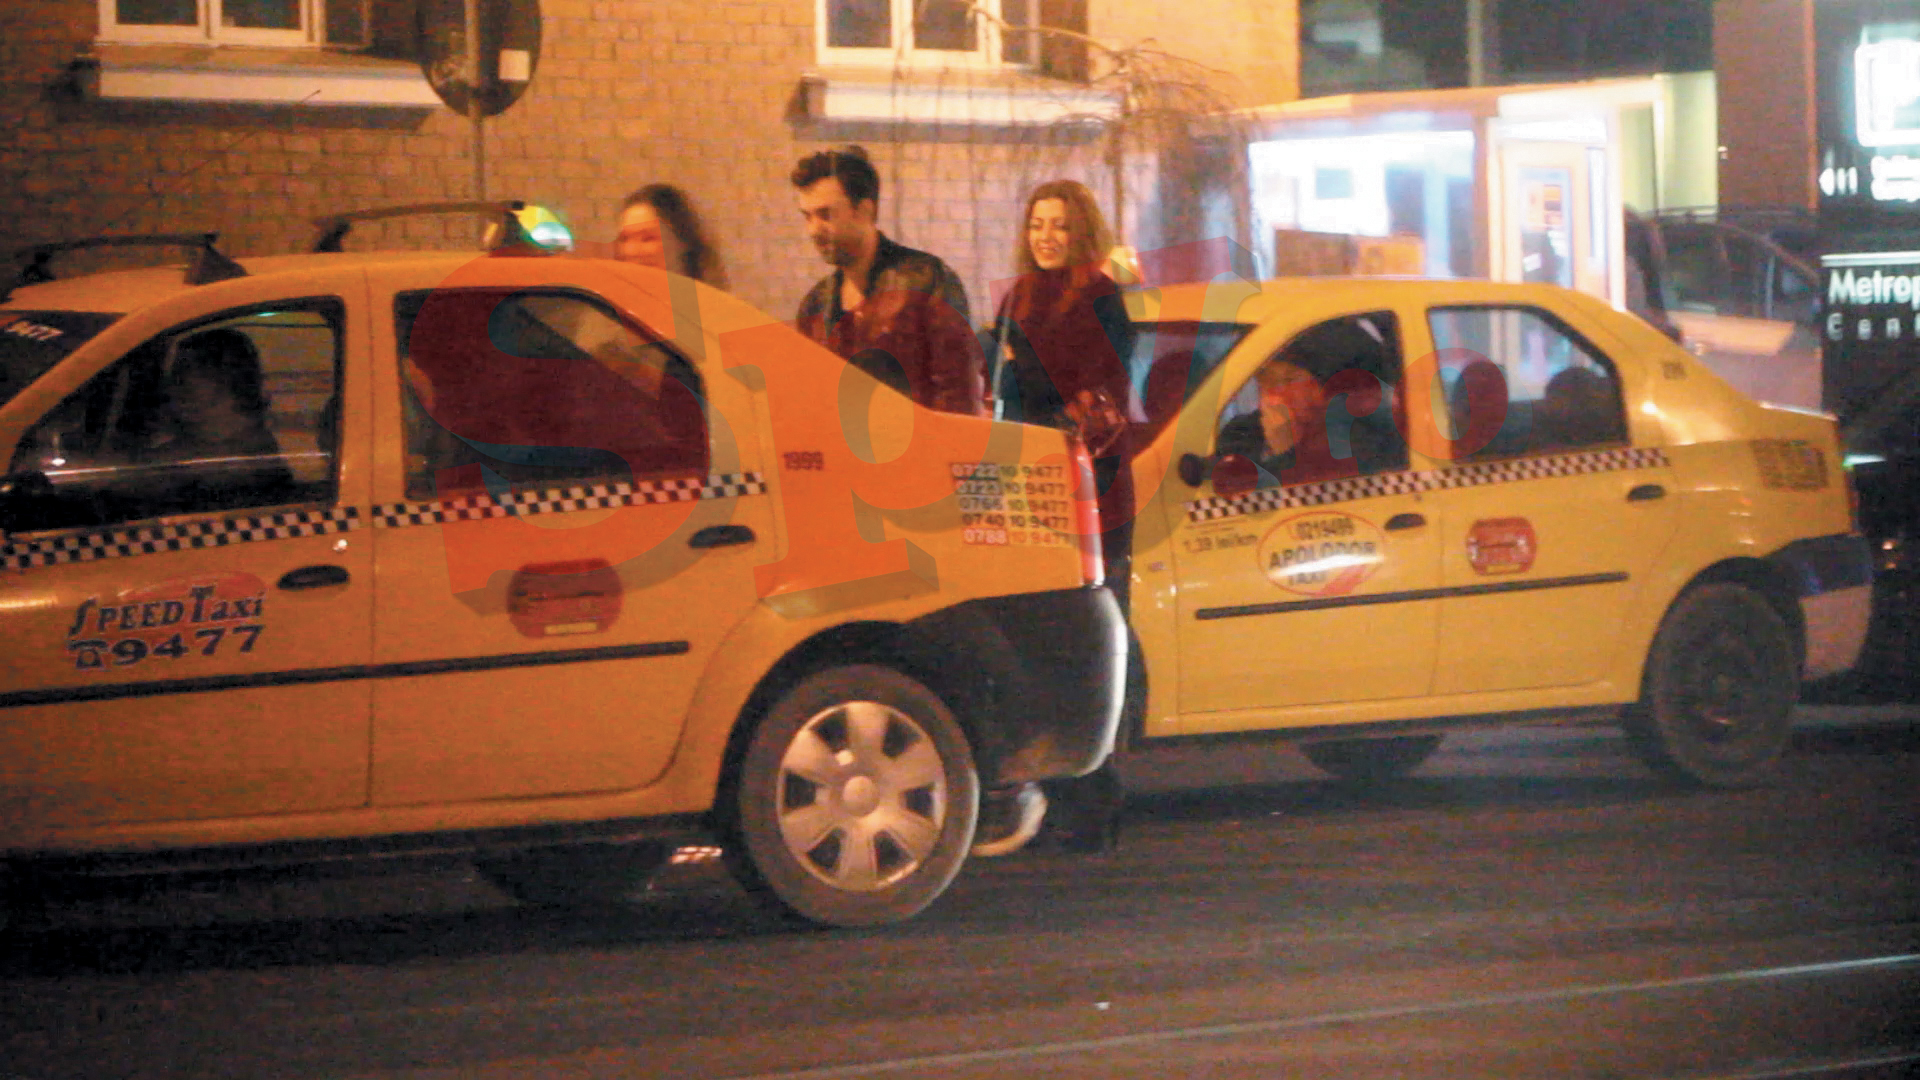 Dapa cateva minute de negocieri, sotul Ralucai urca alaturi de cele doua gazele intr-un taxi